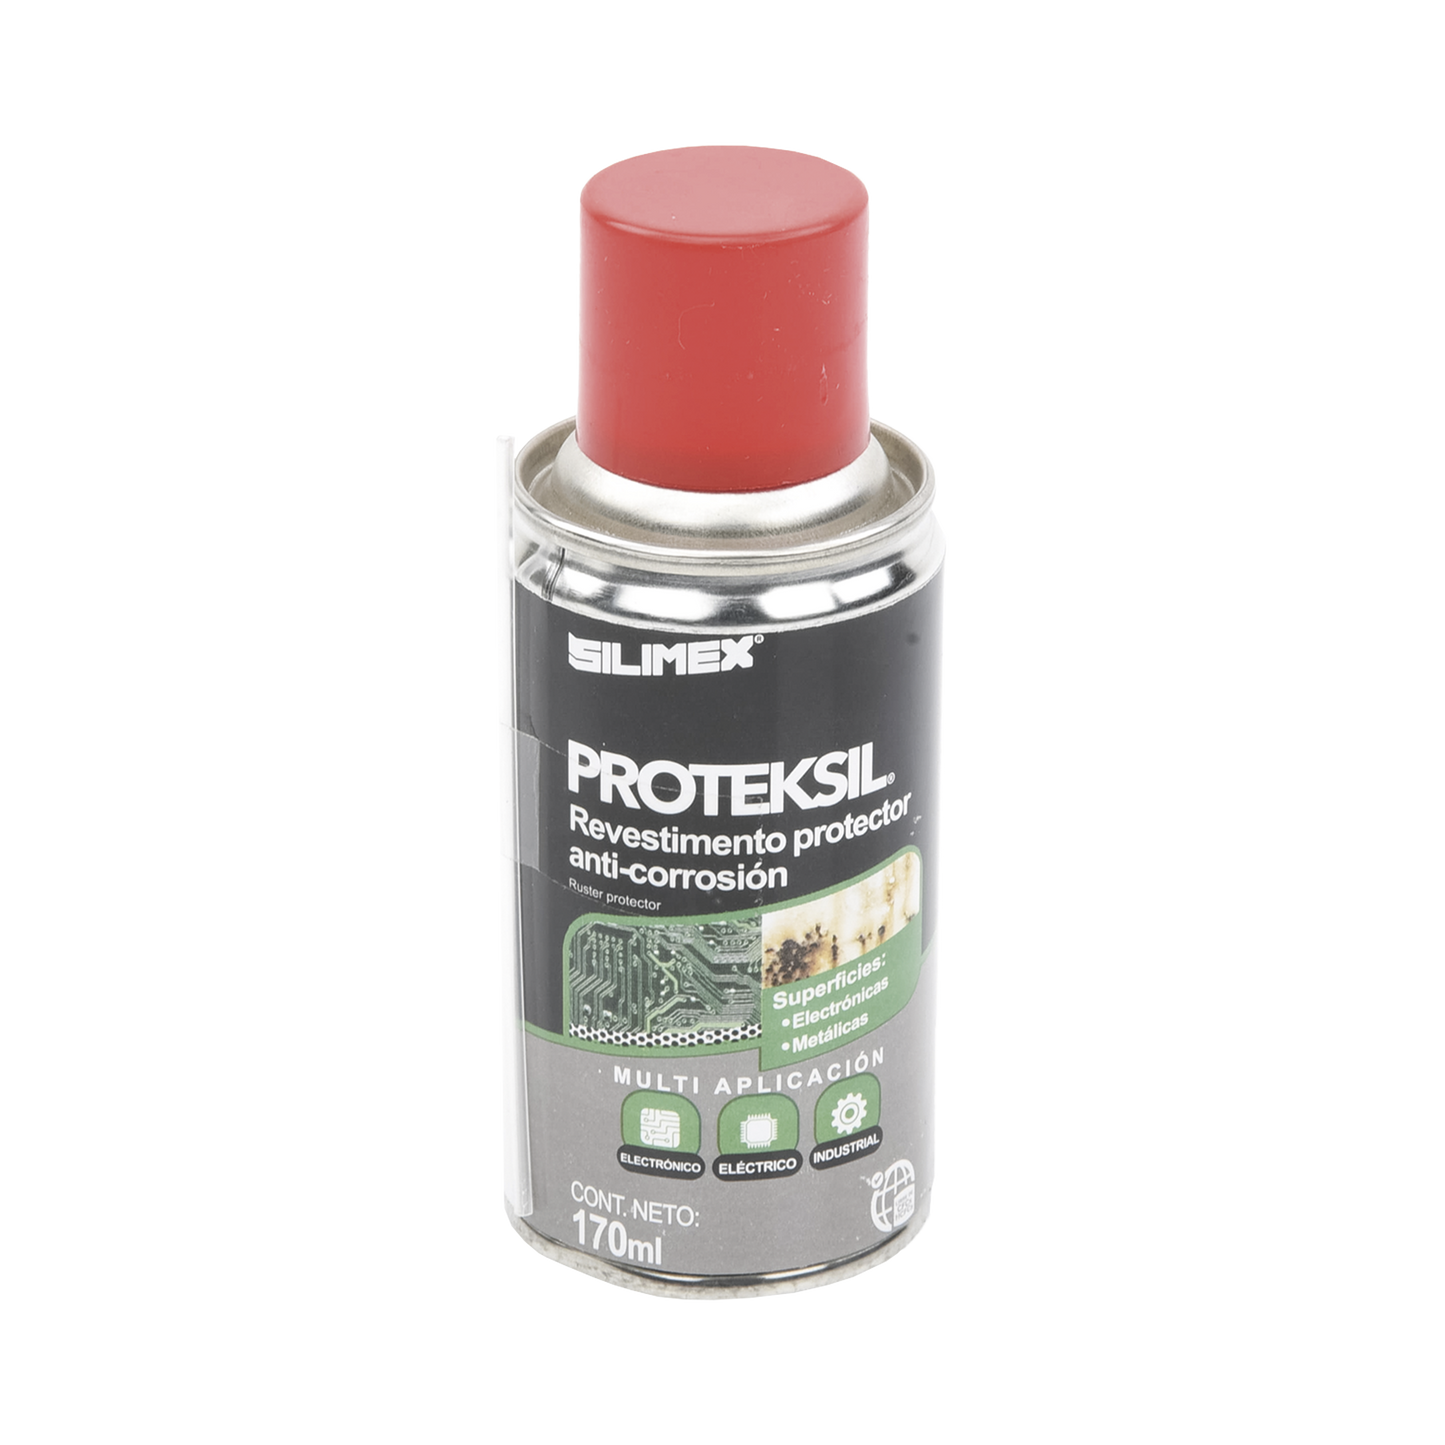 Revestimiento protector anti-corrosión en aerosol, para ambientes altamente húmedos, 170 ml.